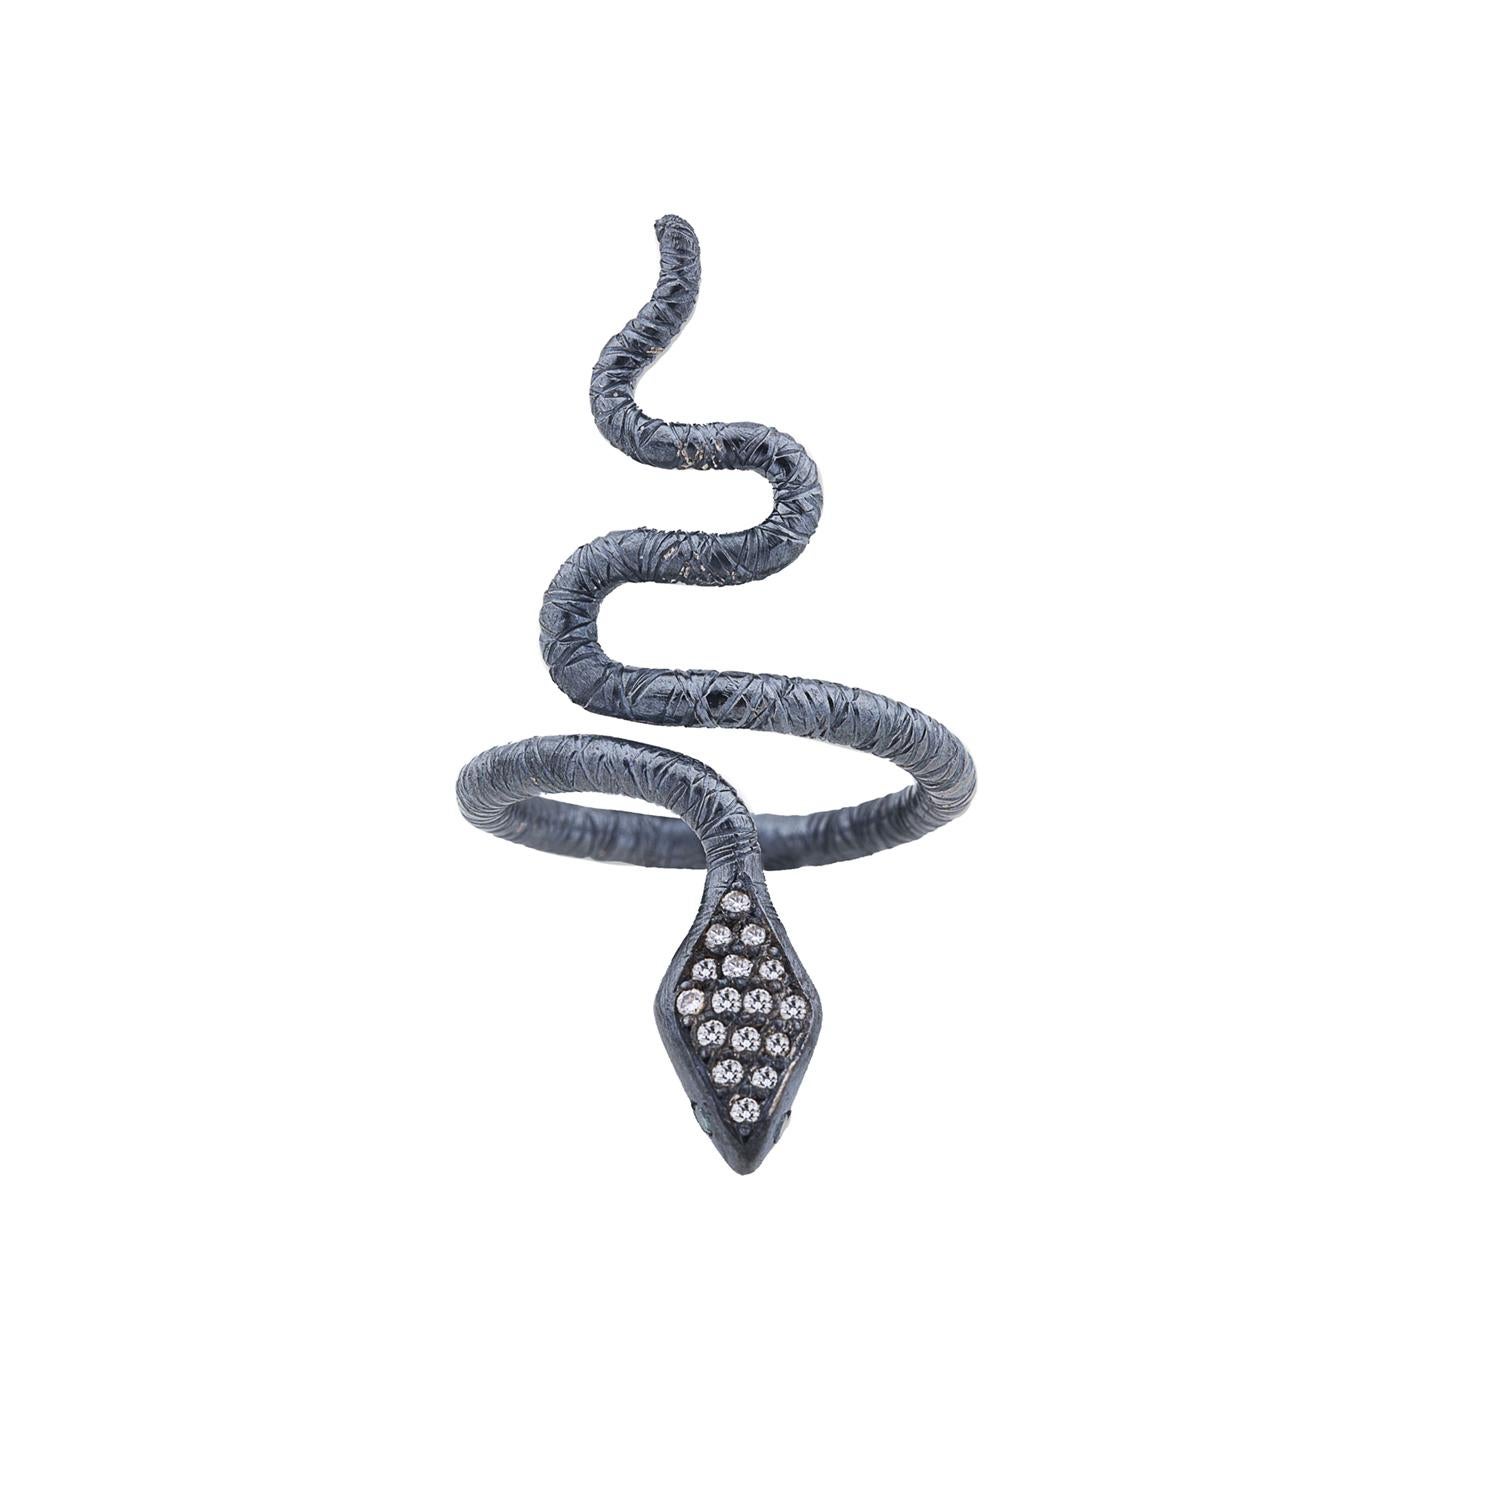 Der Oxidized Sterling Silver Snake Ring von Lika Behar ist ein auffälliges Stück mit einem gewundenen Schlangendesign, das kunstvoll aus oxidiertem Sterlingsilber gefertigt ist. Mit funkelnden weißen Diamanten auf der Rückseite und leuchtend grünen